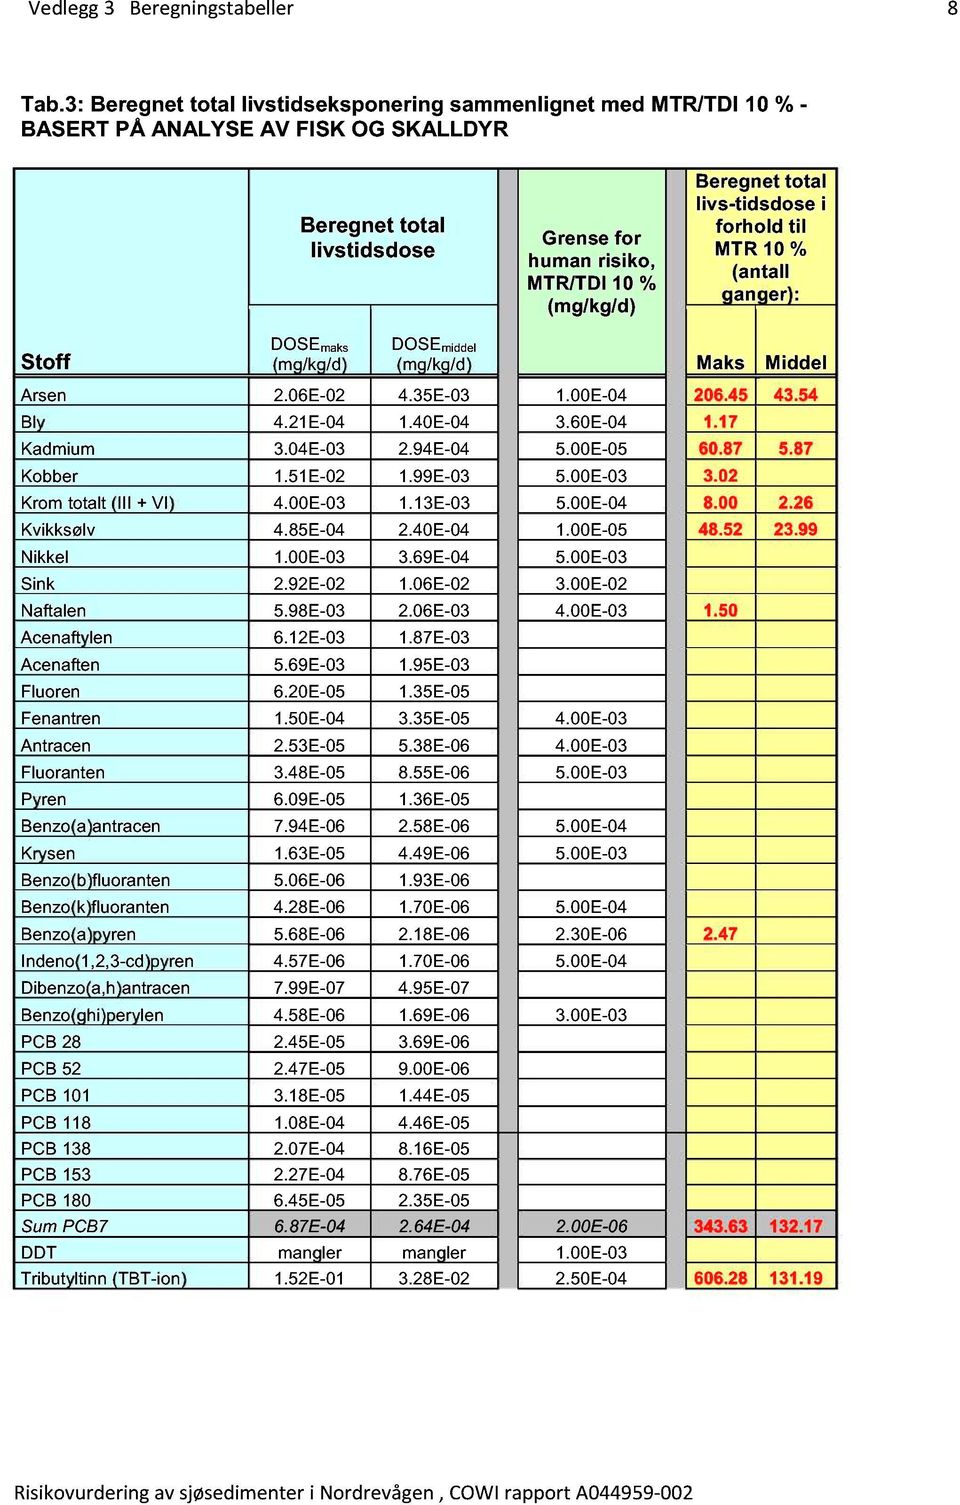 livs-tidsdose i forhold til MTR 10 % (antall ganger): Stoff DOSE maks (mg/kg/d) DOSE middel (mg/kg/d) Maks Middel Arsen 2.06E-02 4.35E-03 1.00E-04 206.45 43.54 Bly 4.21E-04 1.40E-04 3.60E-04 1.17 0.